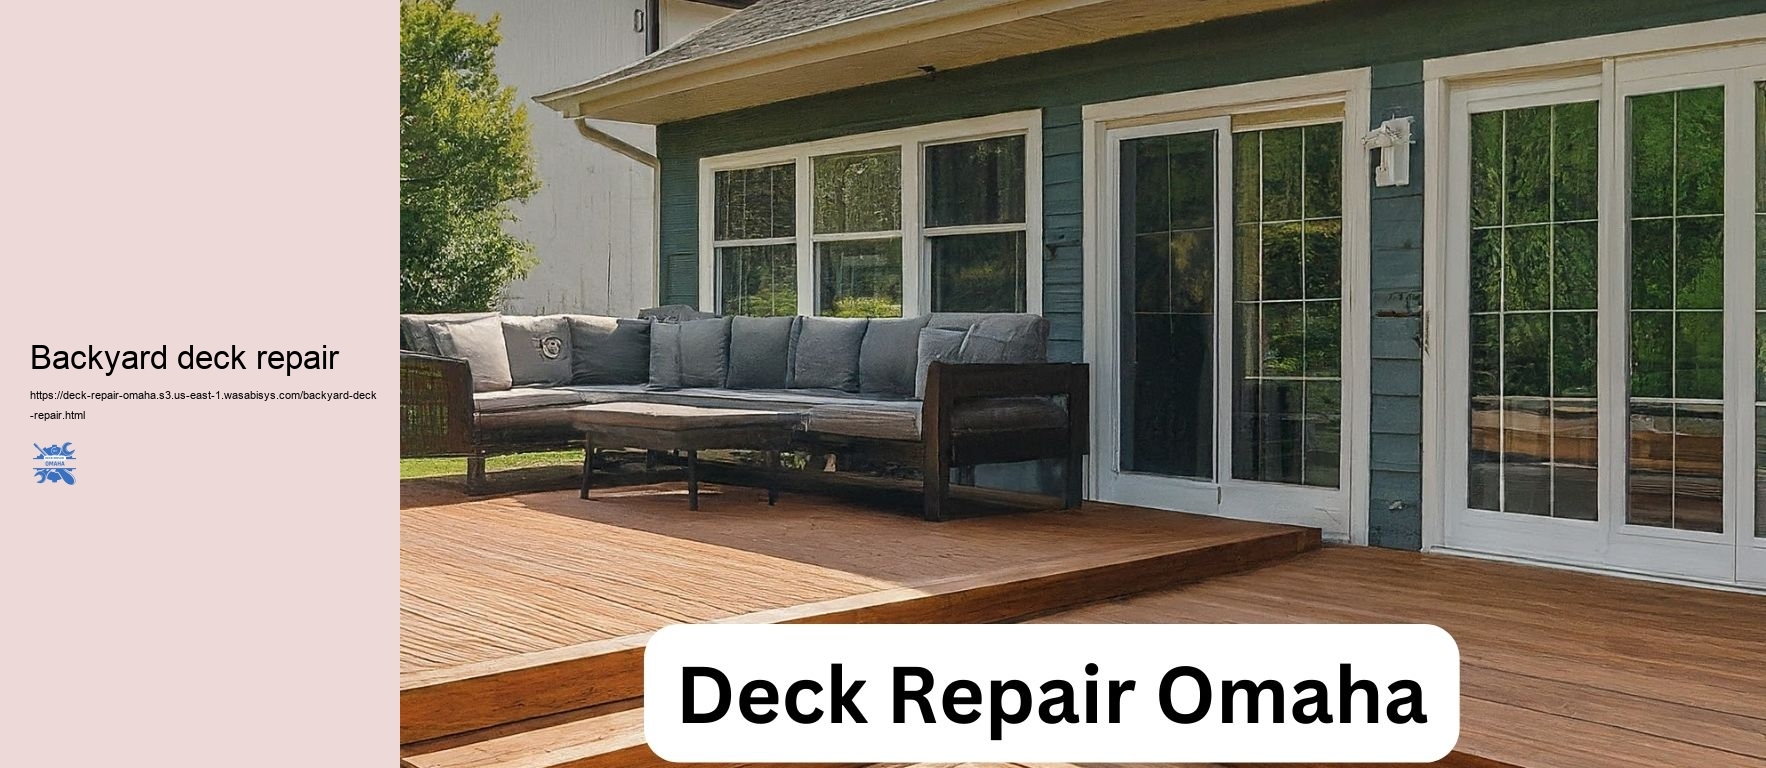 Backyard deck repair